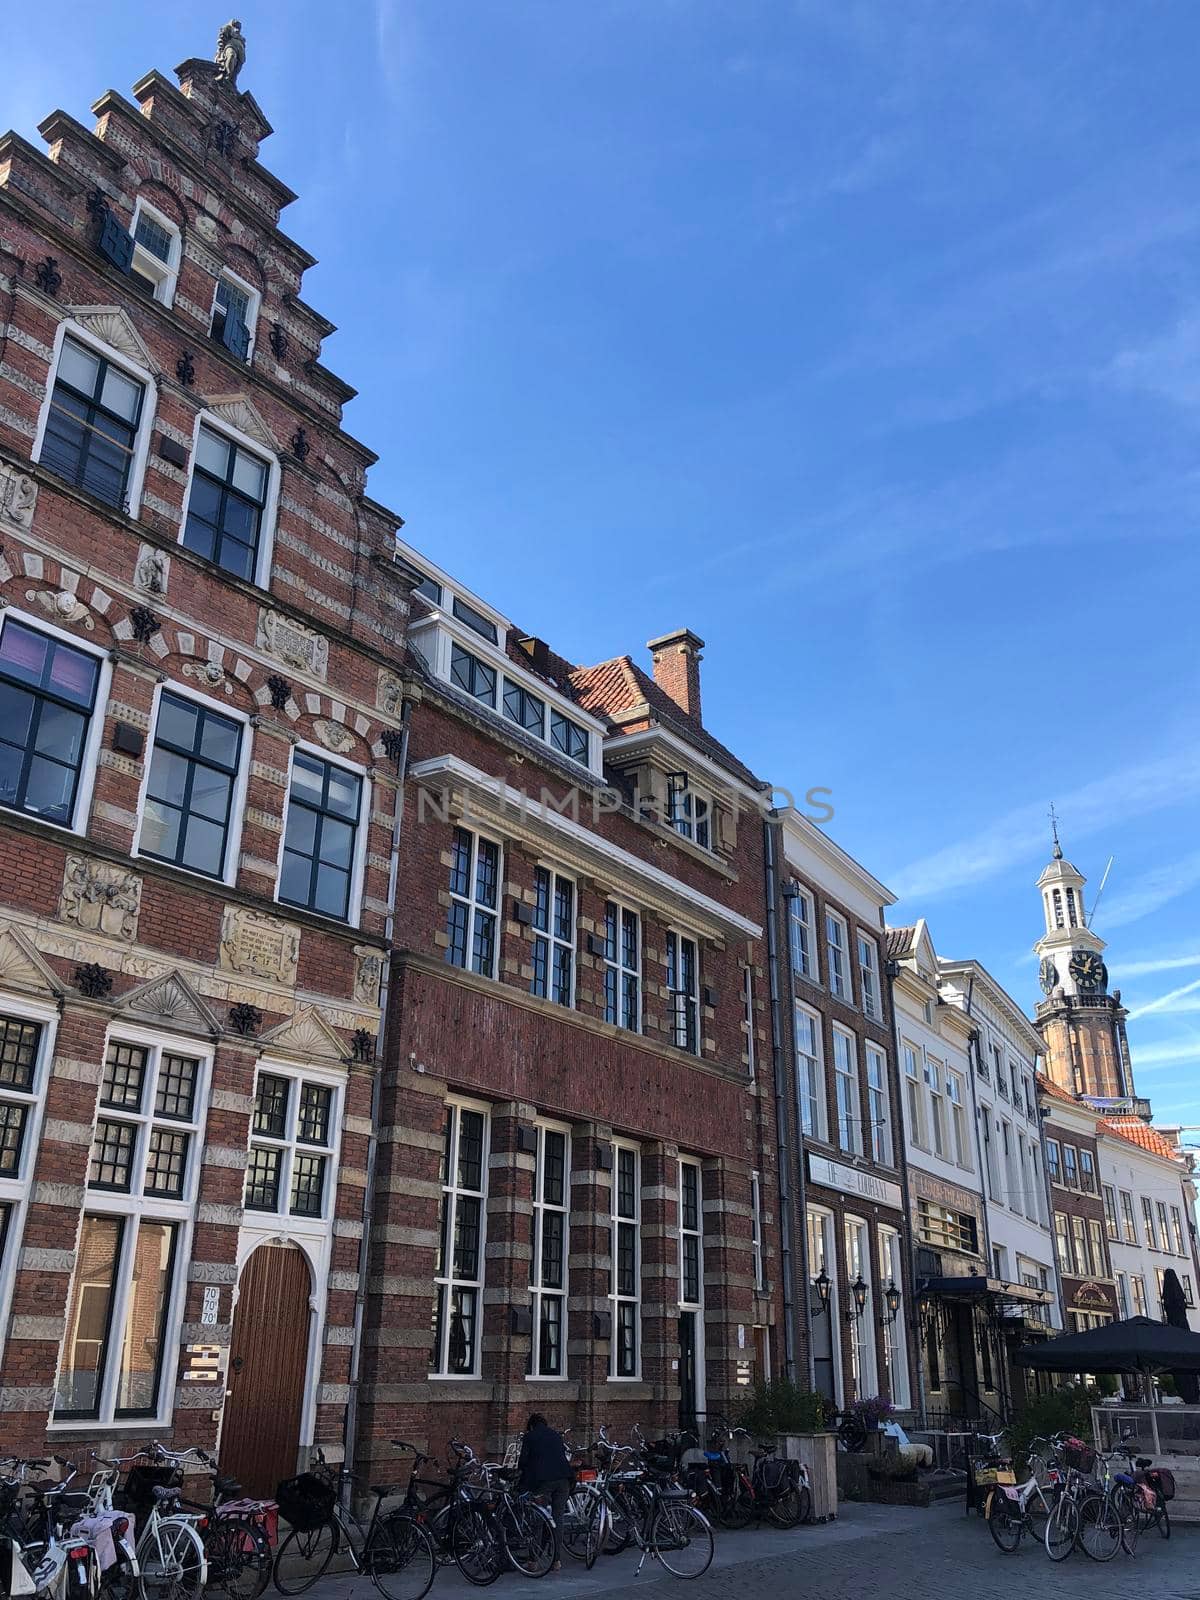 Architecture in the old town of Zutphen, Gelderland The Netherlands